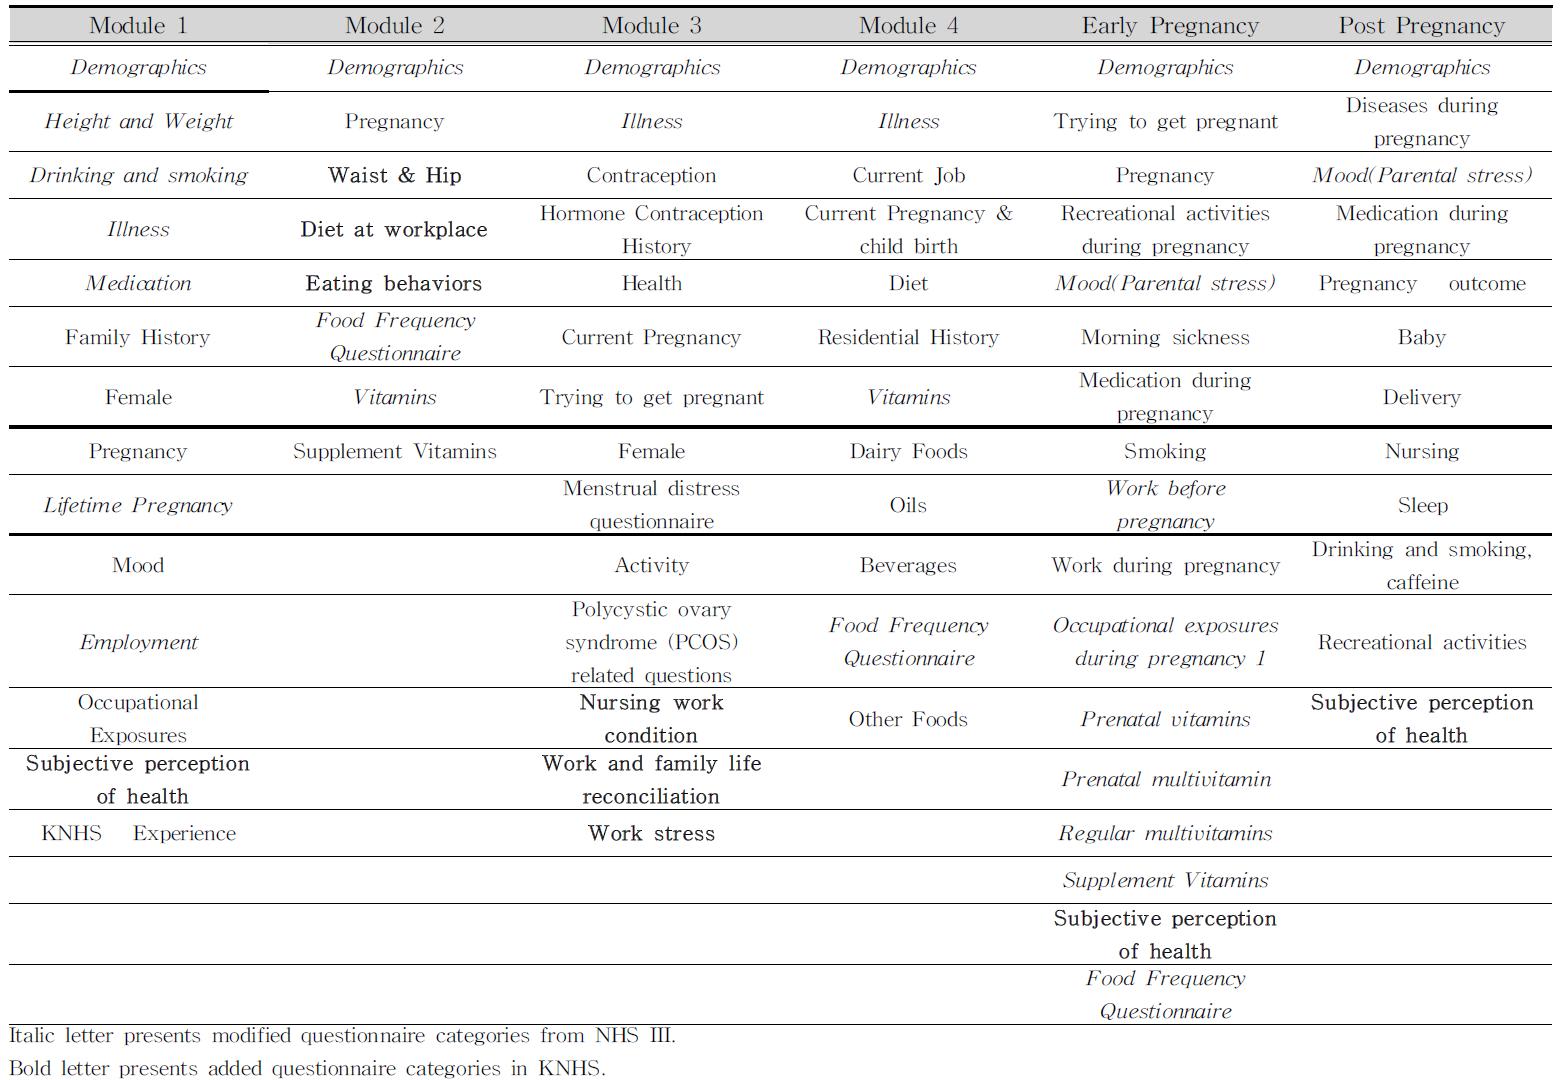 Summary of questionnaire variables in each module of Korea Nurses’ Health Study